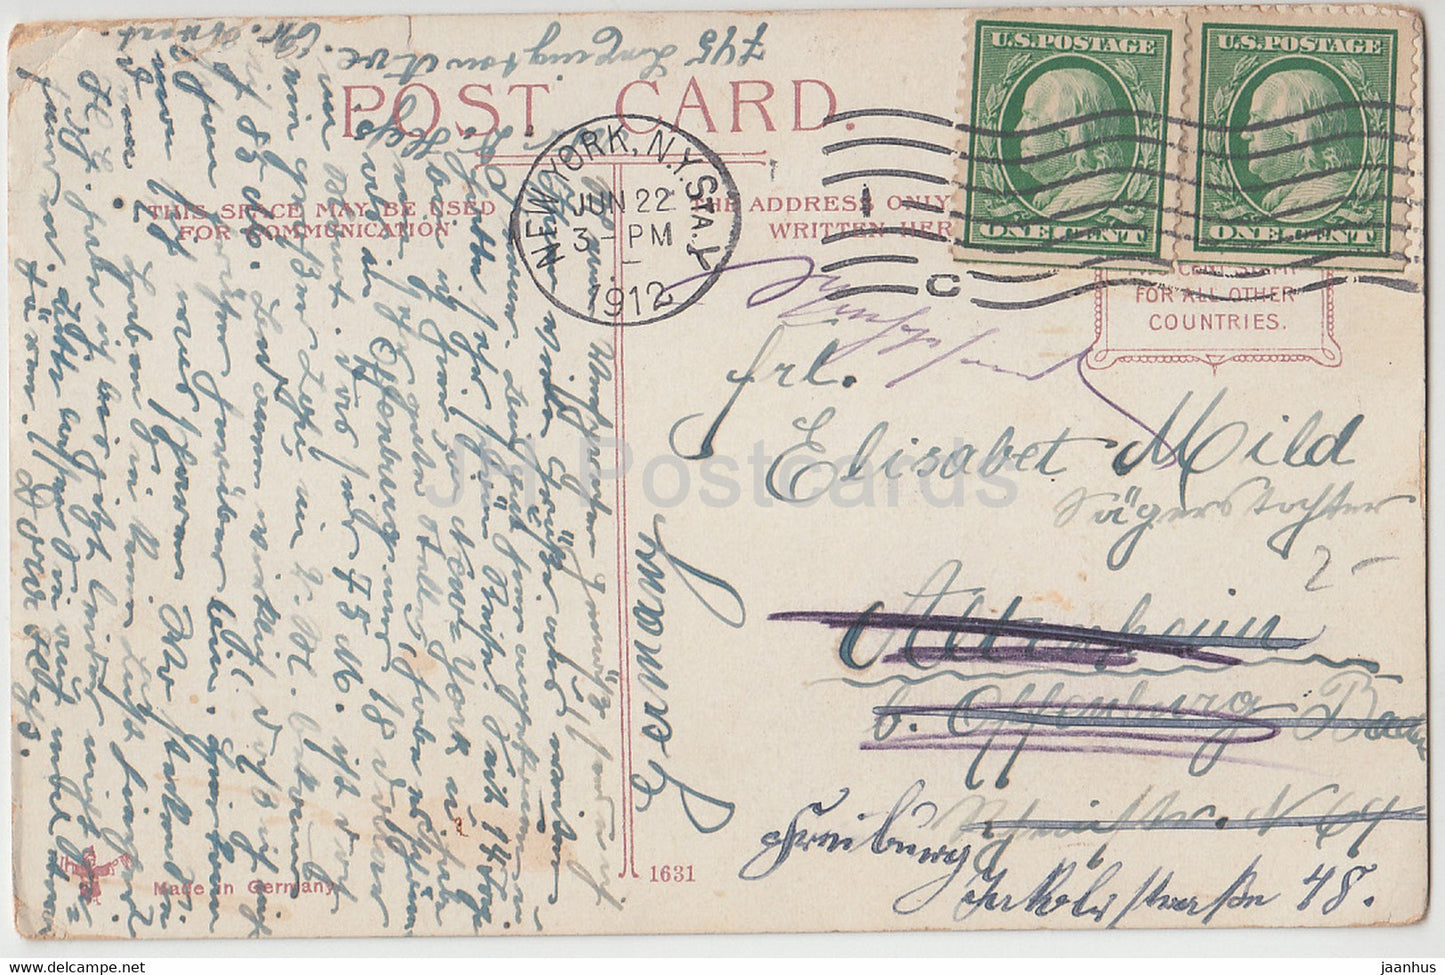 New York – Park Row Building – 1631 – alte Postkarte – 1912 – Vereinigte Staaten – USA – gebraucht